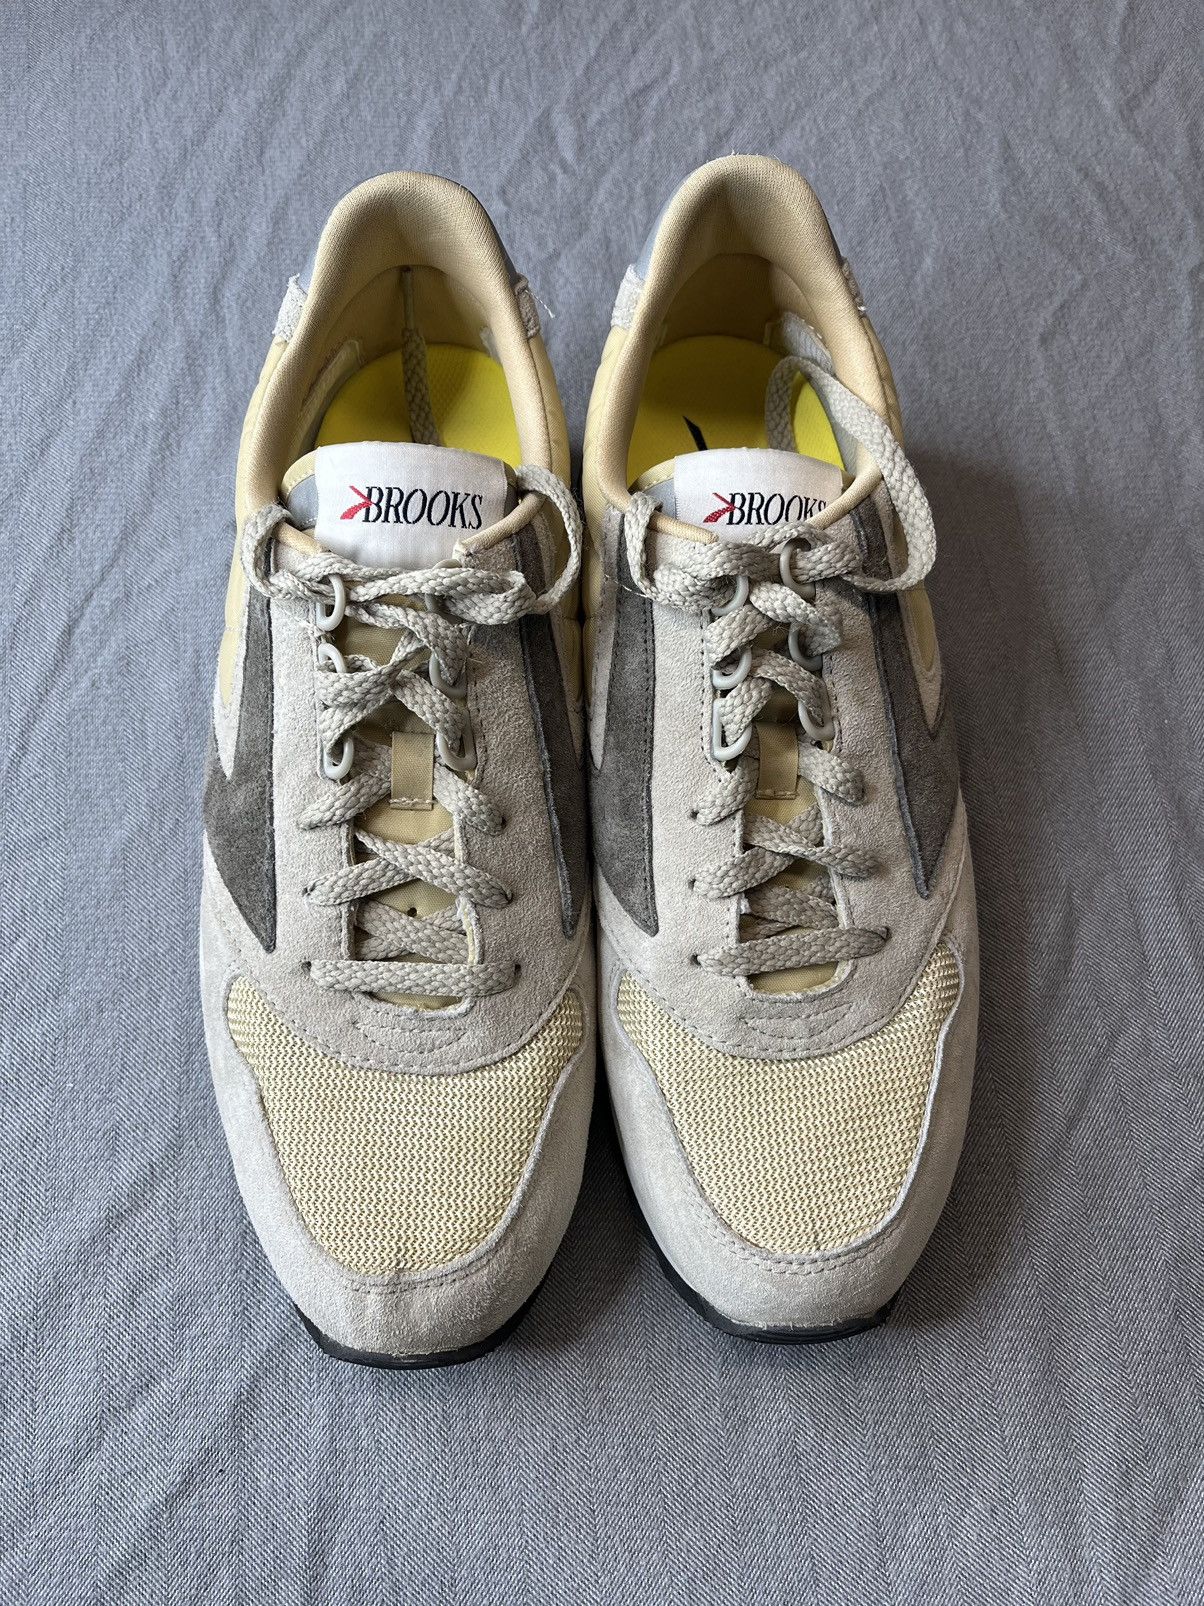 Vintage Vintage 80s/90s Brooks Chariot Suede 3M Running Shoes Sz 11 Size US 11 / EU 44 - 5 Thumbnail